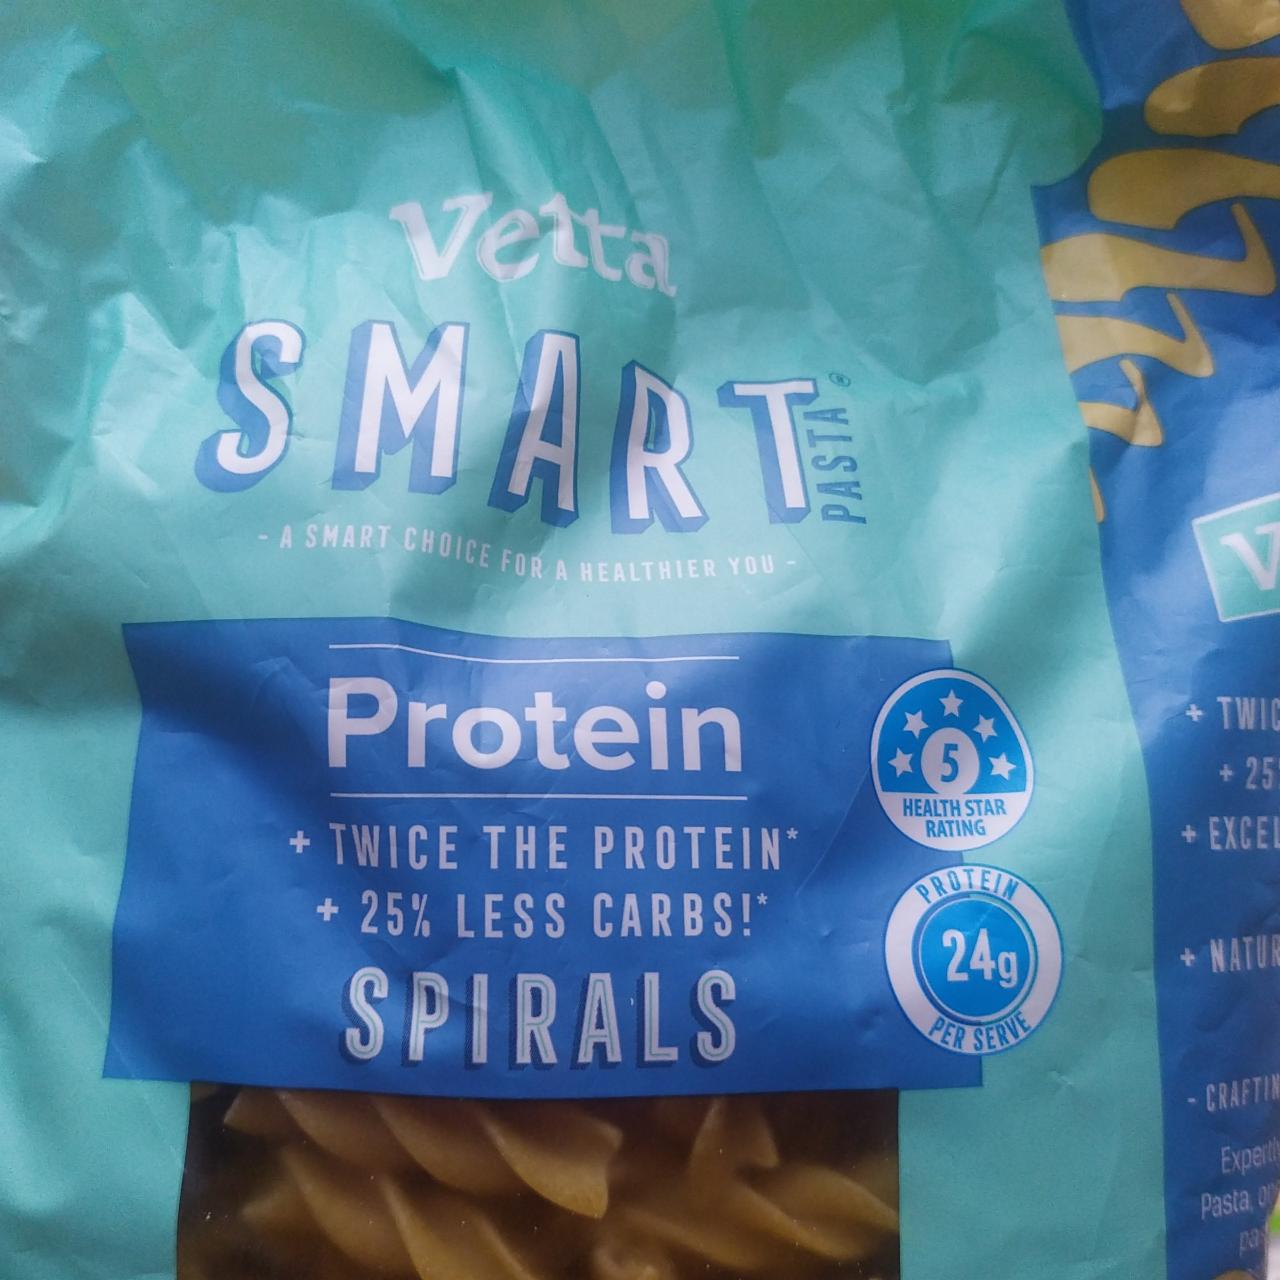 Fotografie - Protein Spirals Vetta smart pasta